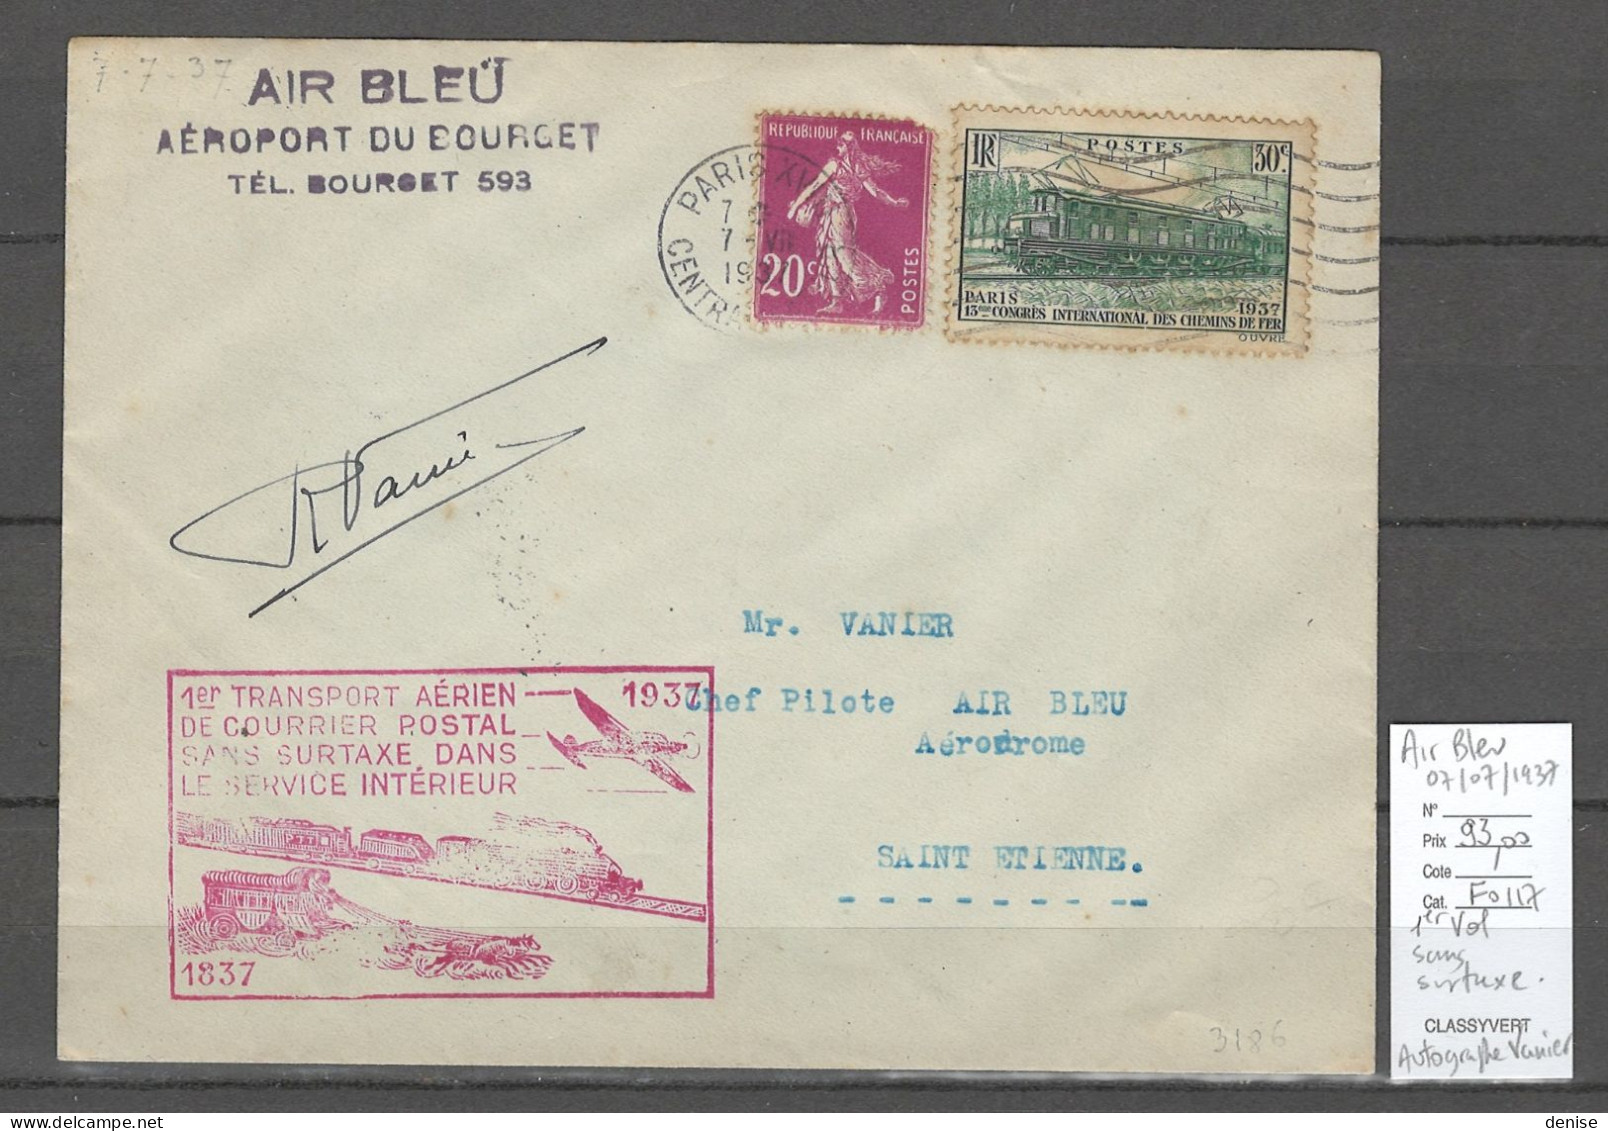 France - 1er Service Postal SANS SURTAXE - AIR BLEU - AUTOGRAPHE DU PILOTE VANIER - 1937 - 1927-1959 Storia Postale